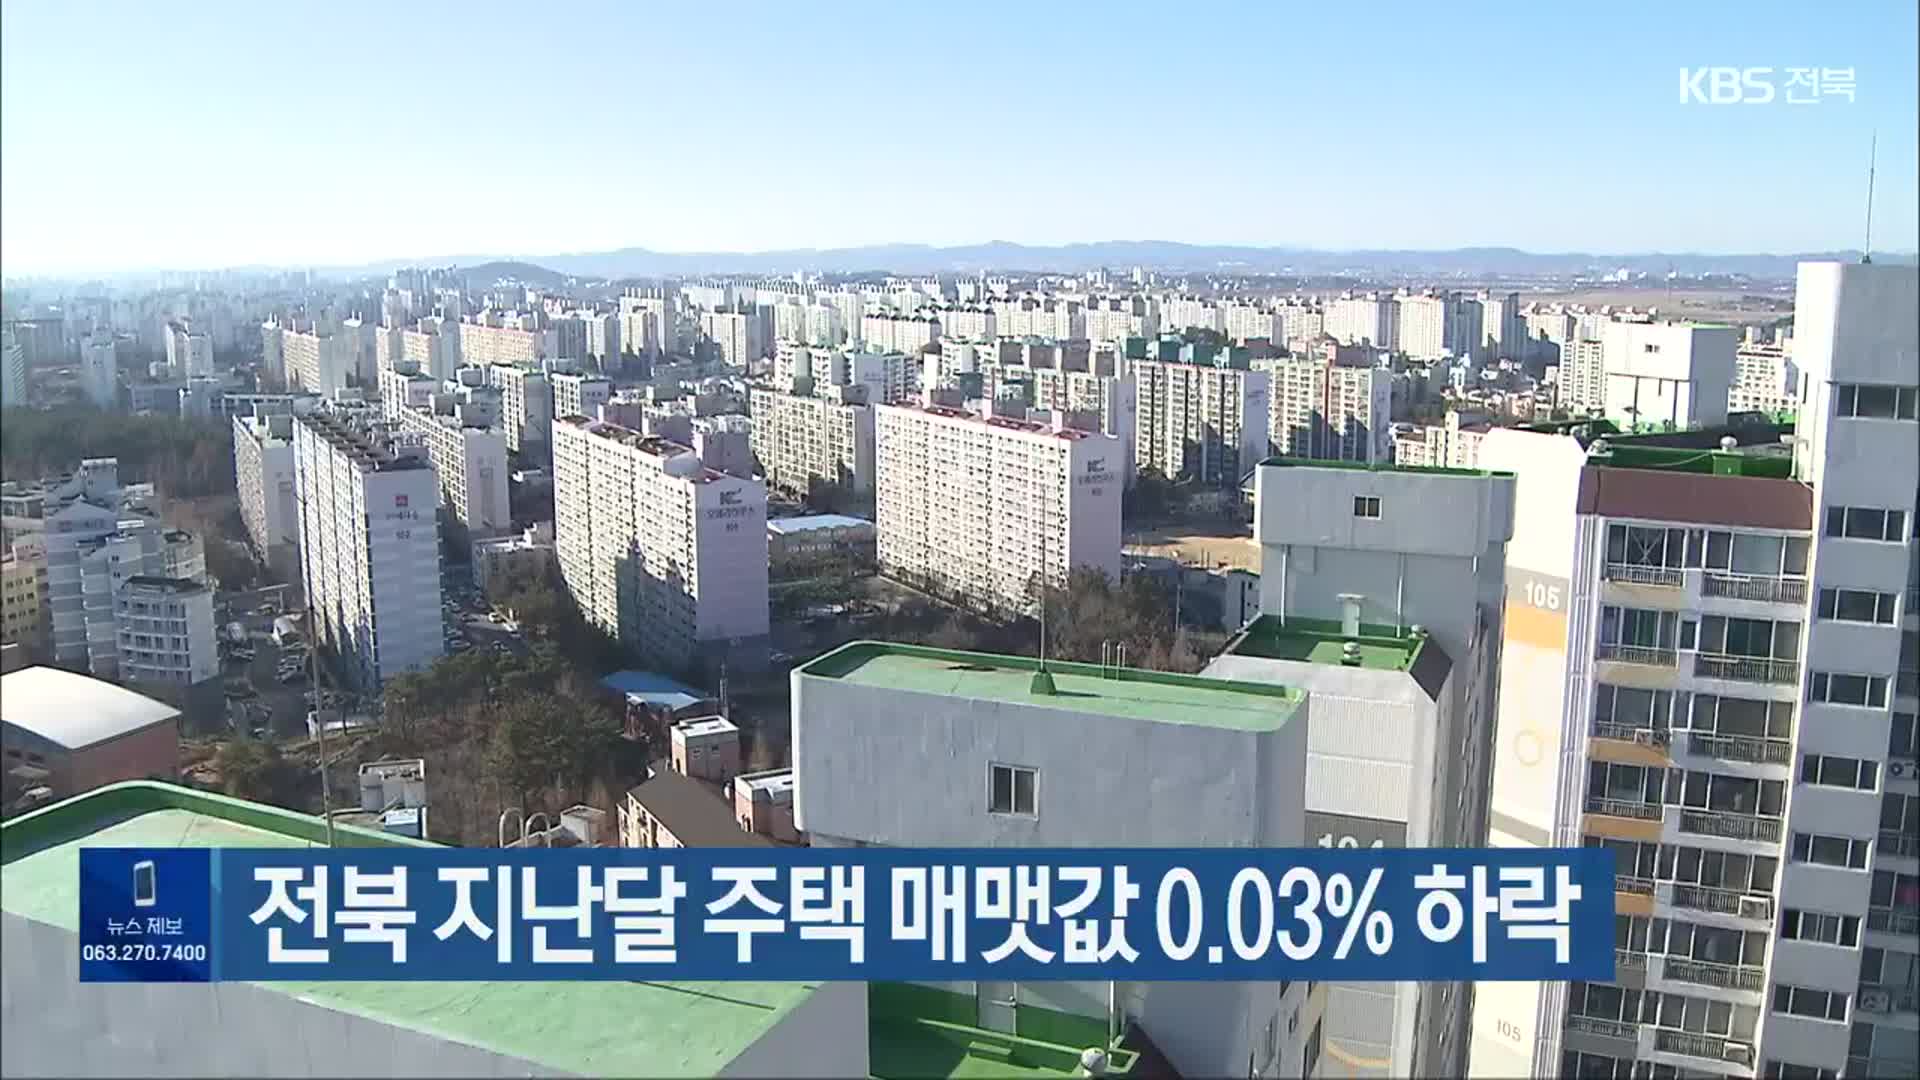 전북 지난달 주택 매맷값 0.03% 하락